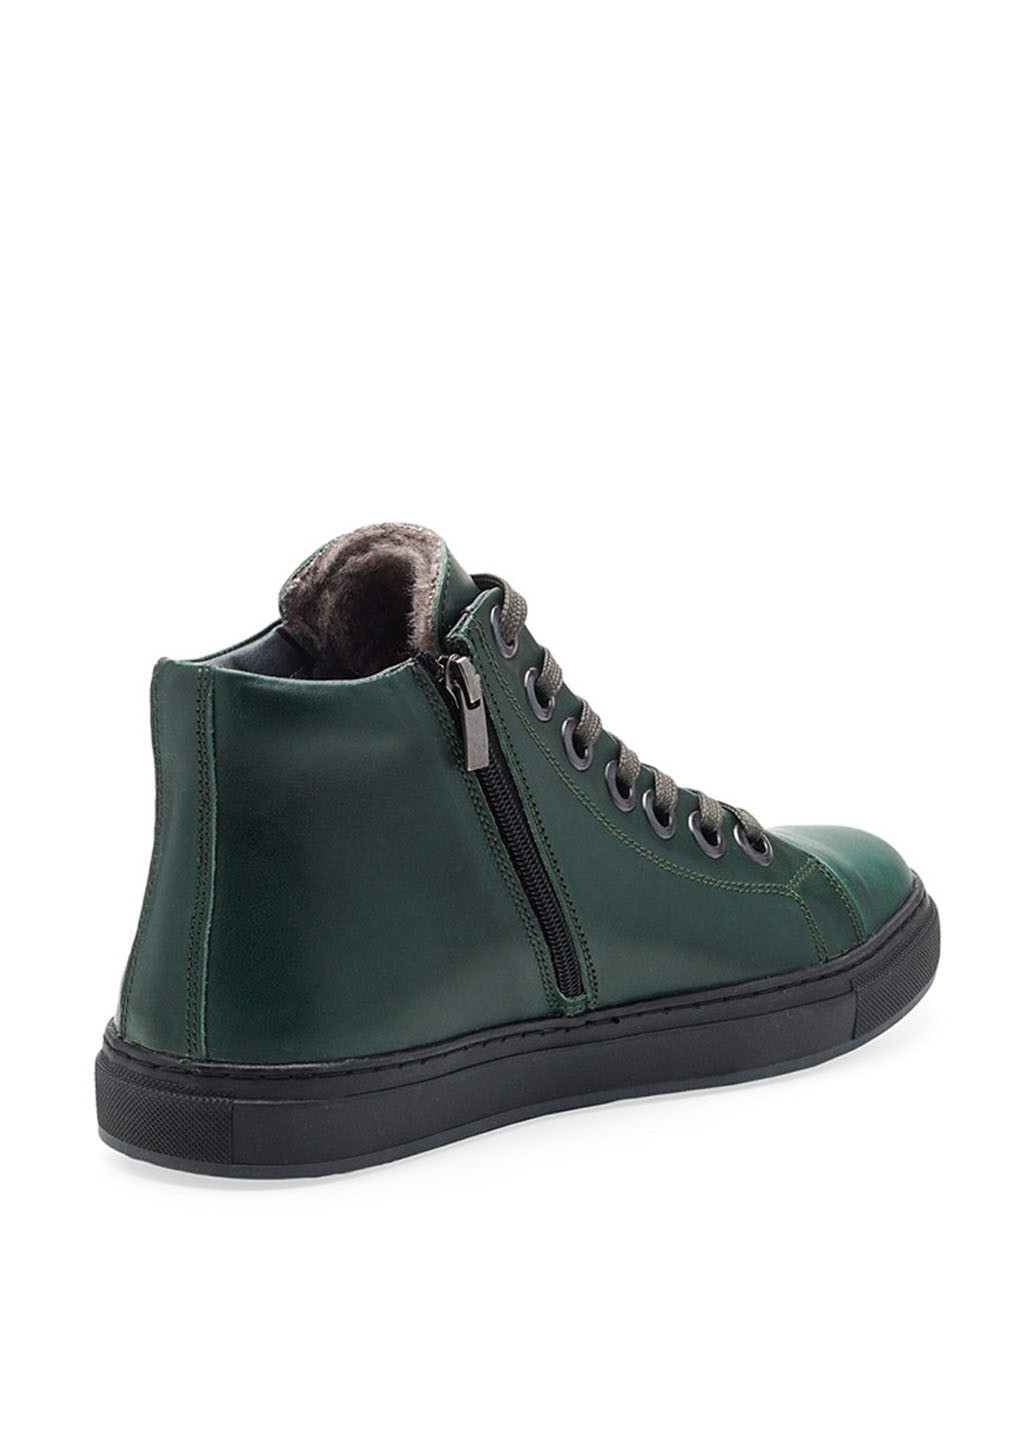 Зеленые зимние ботинки Broni